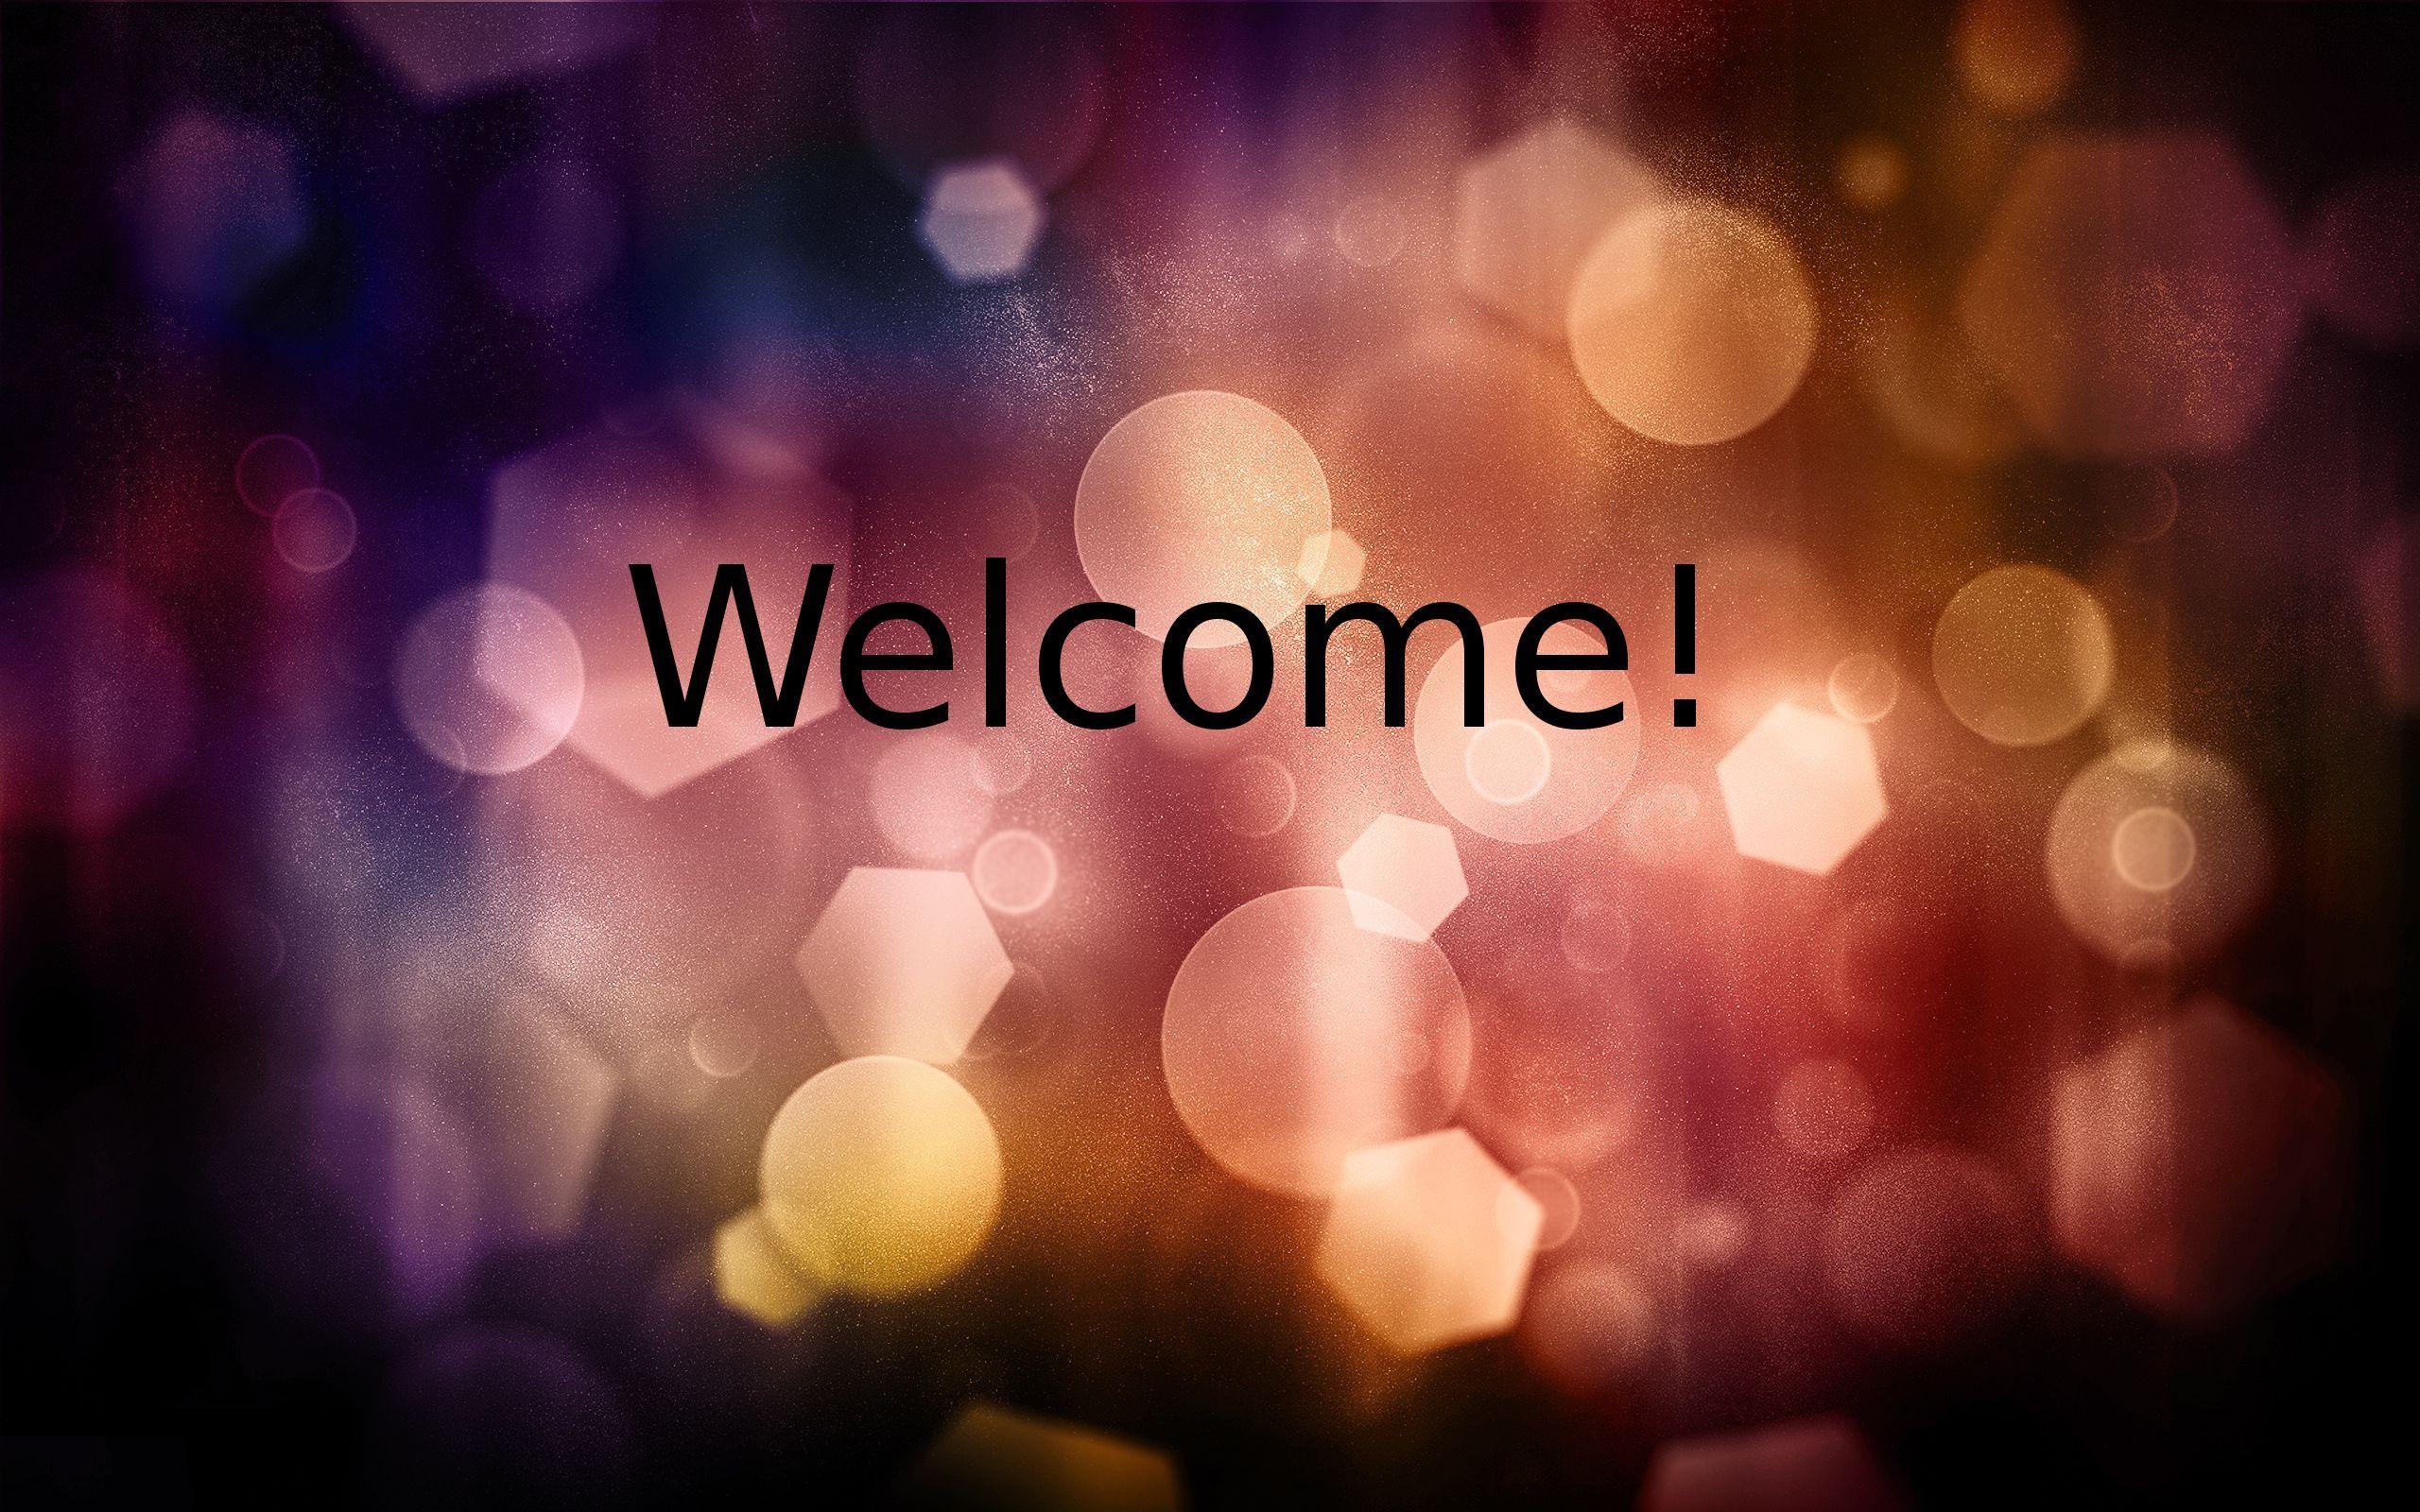 Tổng hợp hình ảnh Welcome xin chào  Hình nền Powerpoint mở đầu slide ấn  tượng  Welcome images Welcome gif Powerpoint